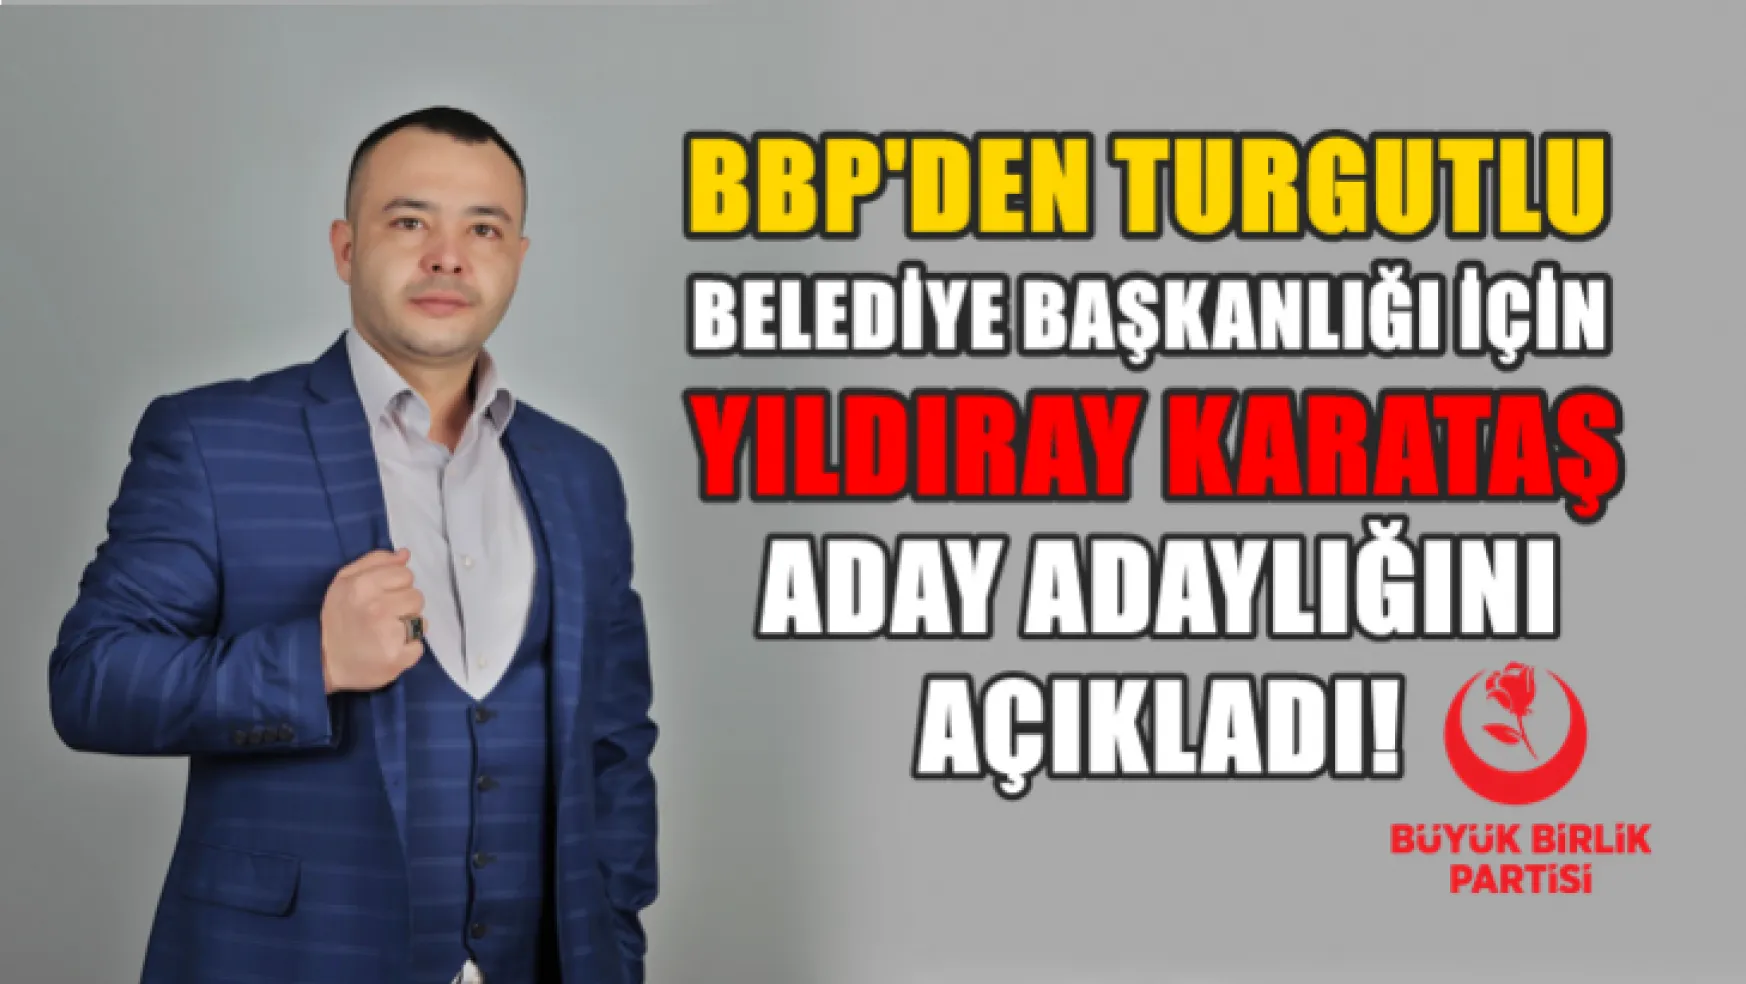 BBP'den Turgutlu Belediye Başkanlığı İçin Yıldıray Karataş Aday Adaylığını Açıkladı!